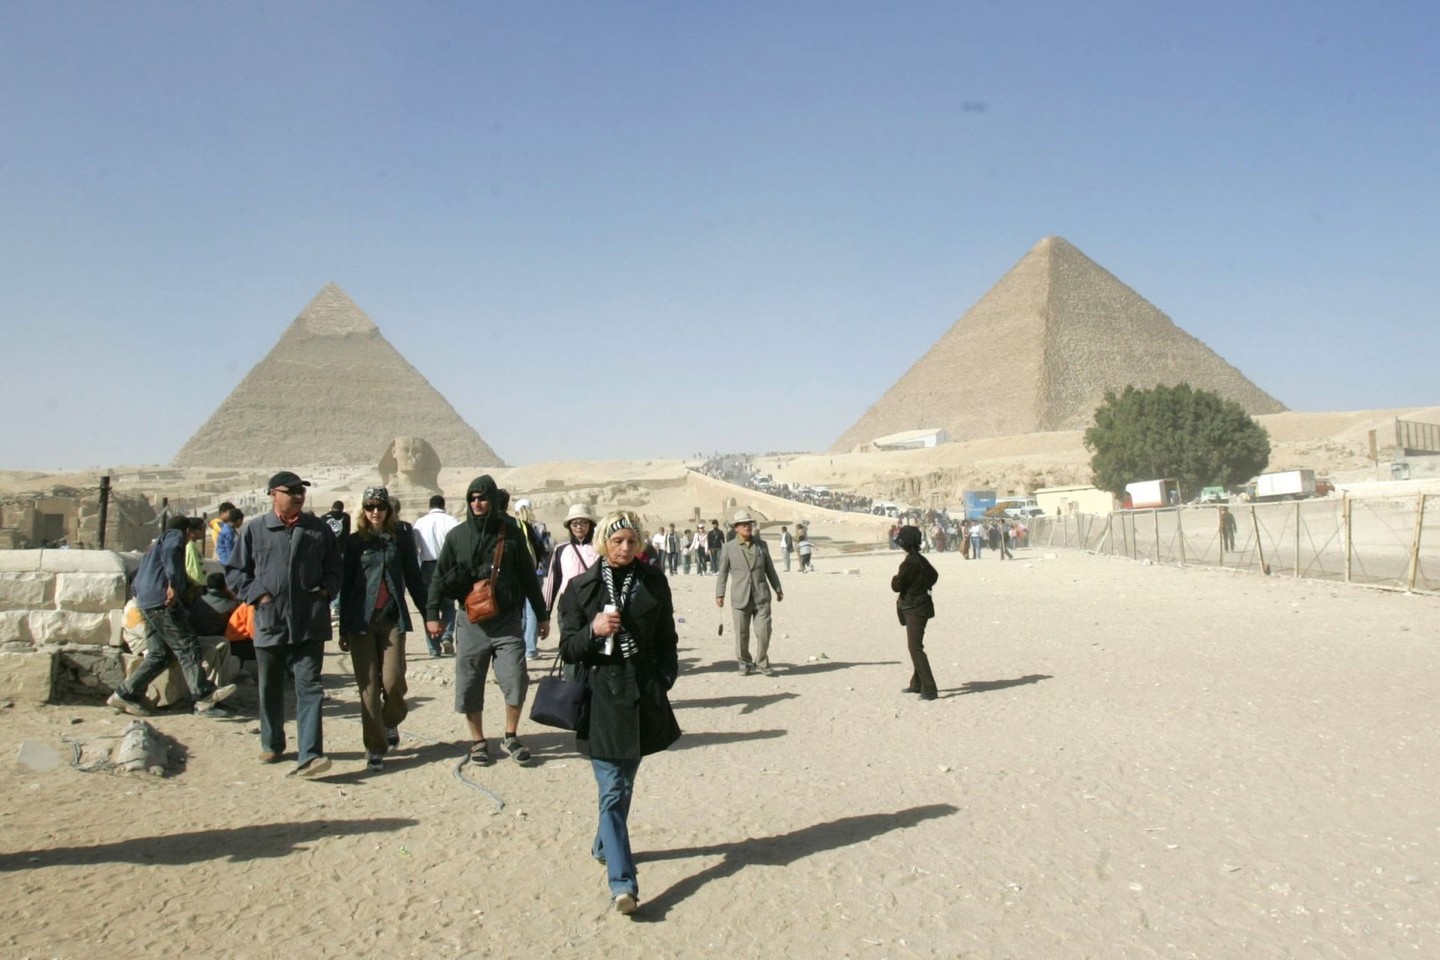 Didžioji piramidė yra stambiausia iš trijų al Gizos piramidžių, joje apie 2600 m. pr. Kr. buvo palaidotas IV dinastijos faraonas Chufu (graikų pavadintas Cheopsu).<br>Lrytas.lt asociatyvi nuotr.